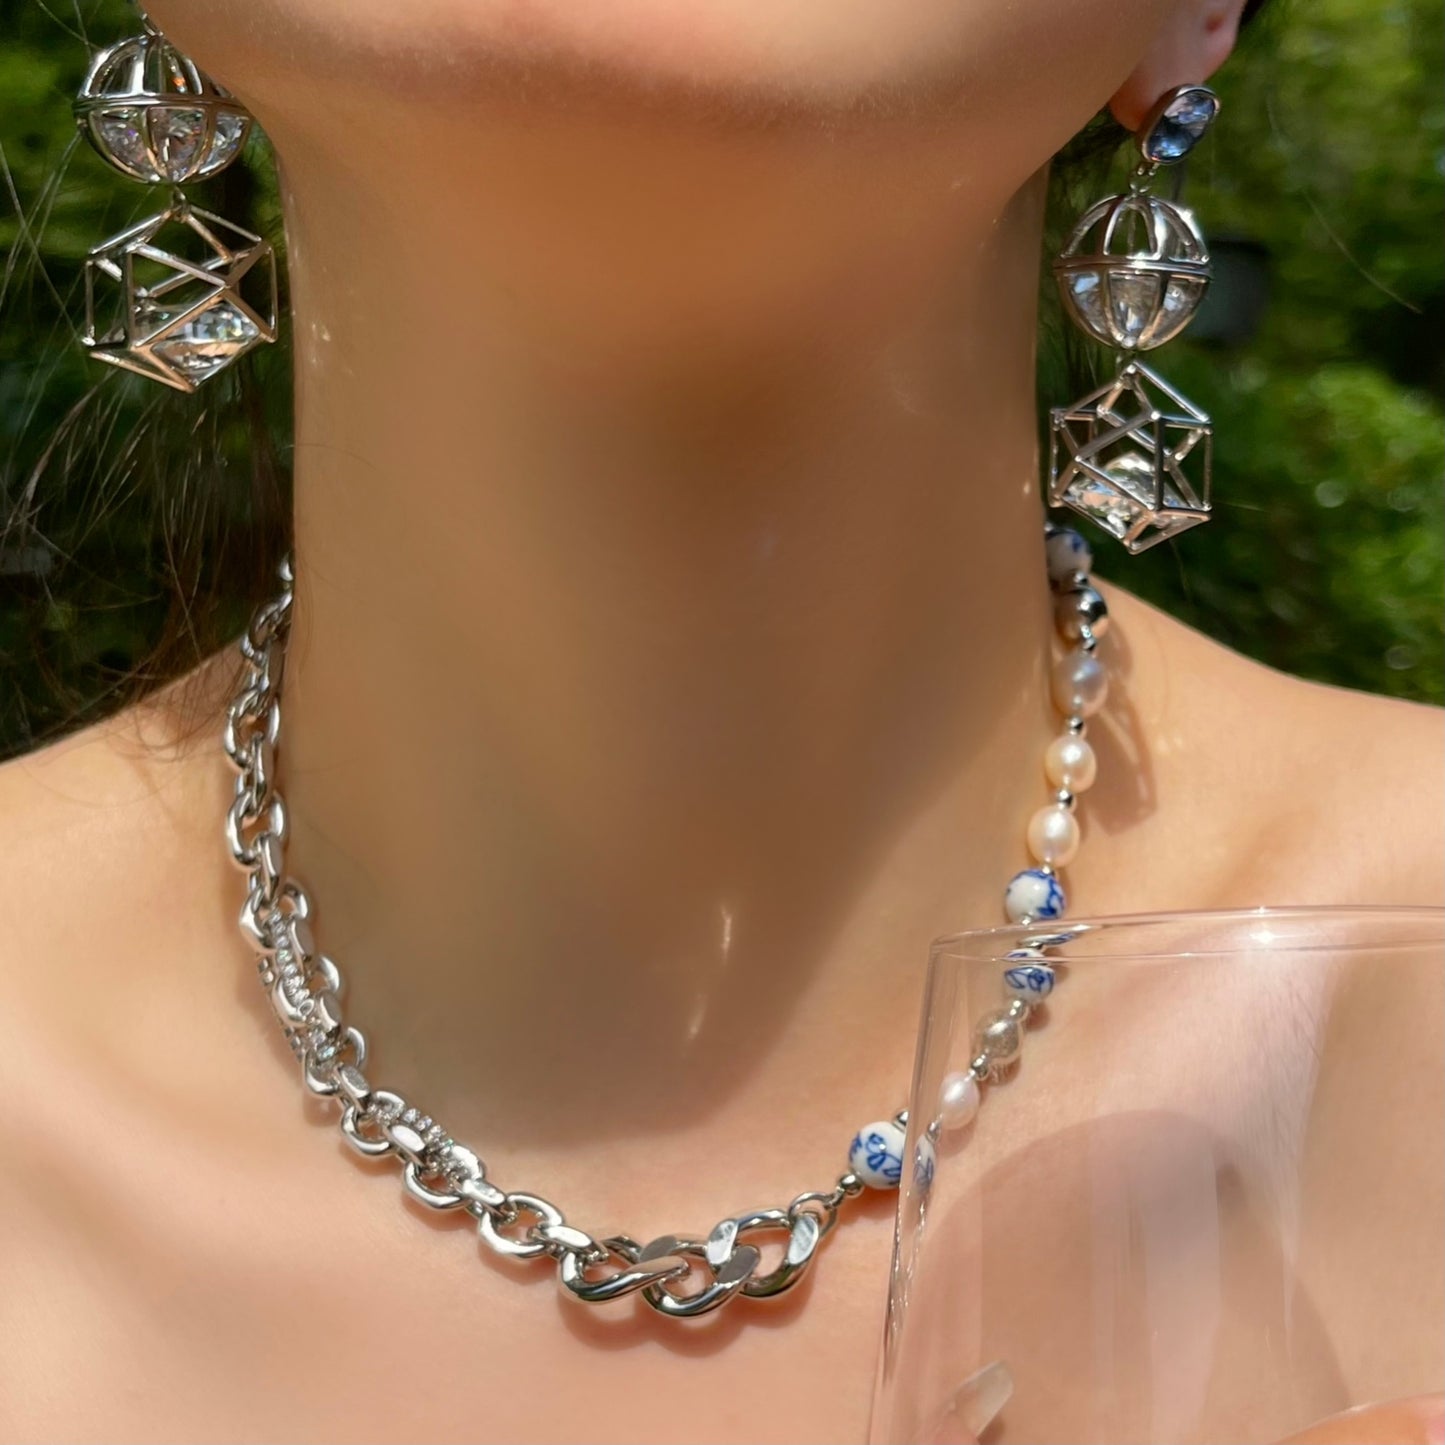 Geometric Crystal Earrings